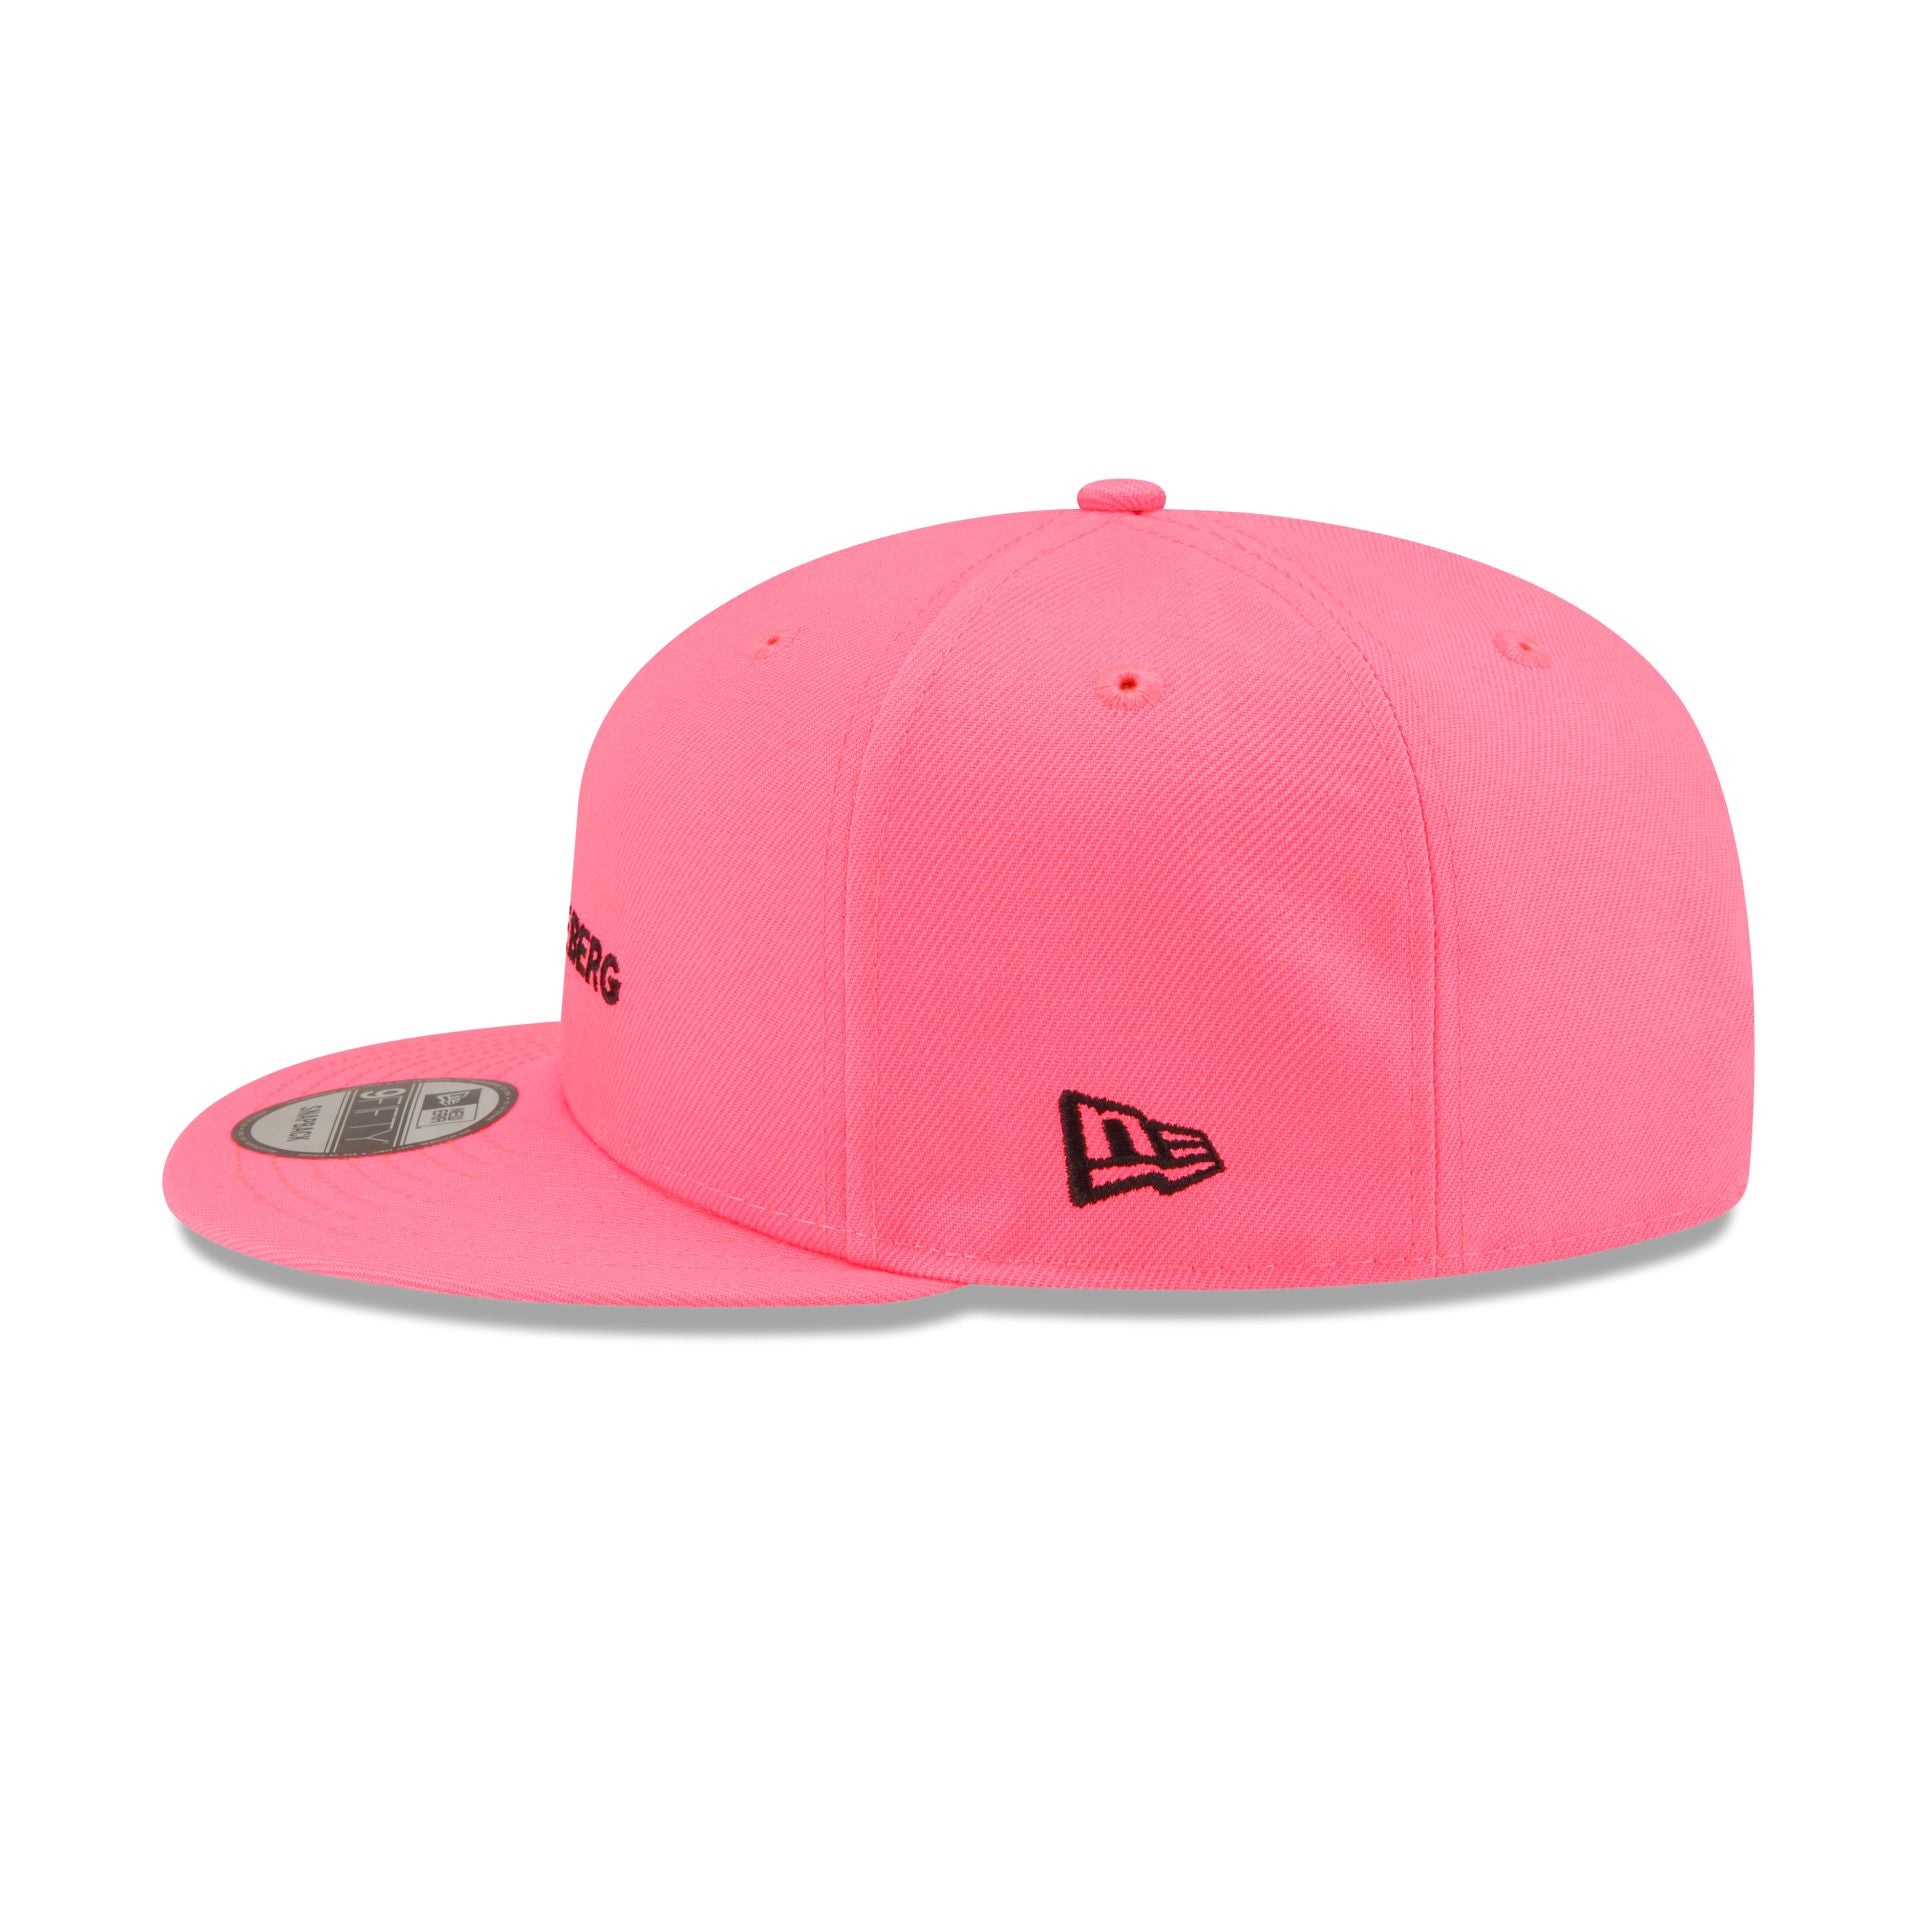 J. Lindeberg Pink 9FIFTY Snapback Hat – New Era Cap